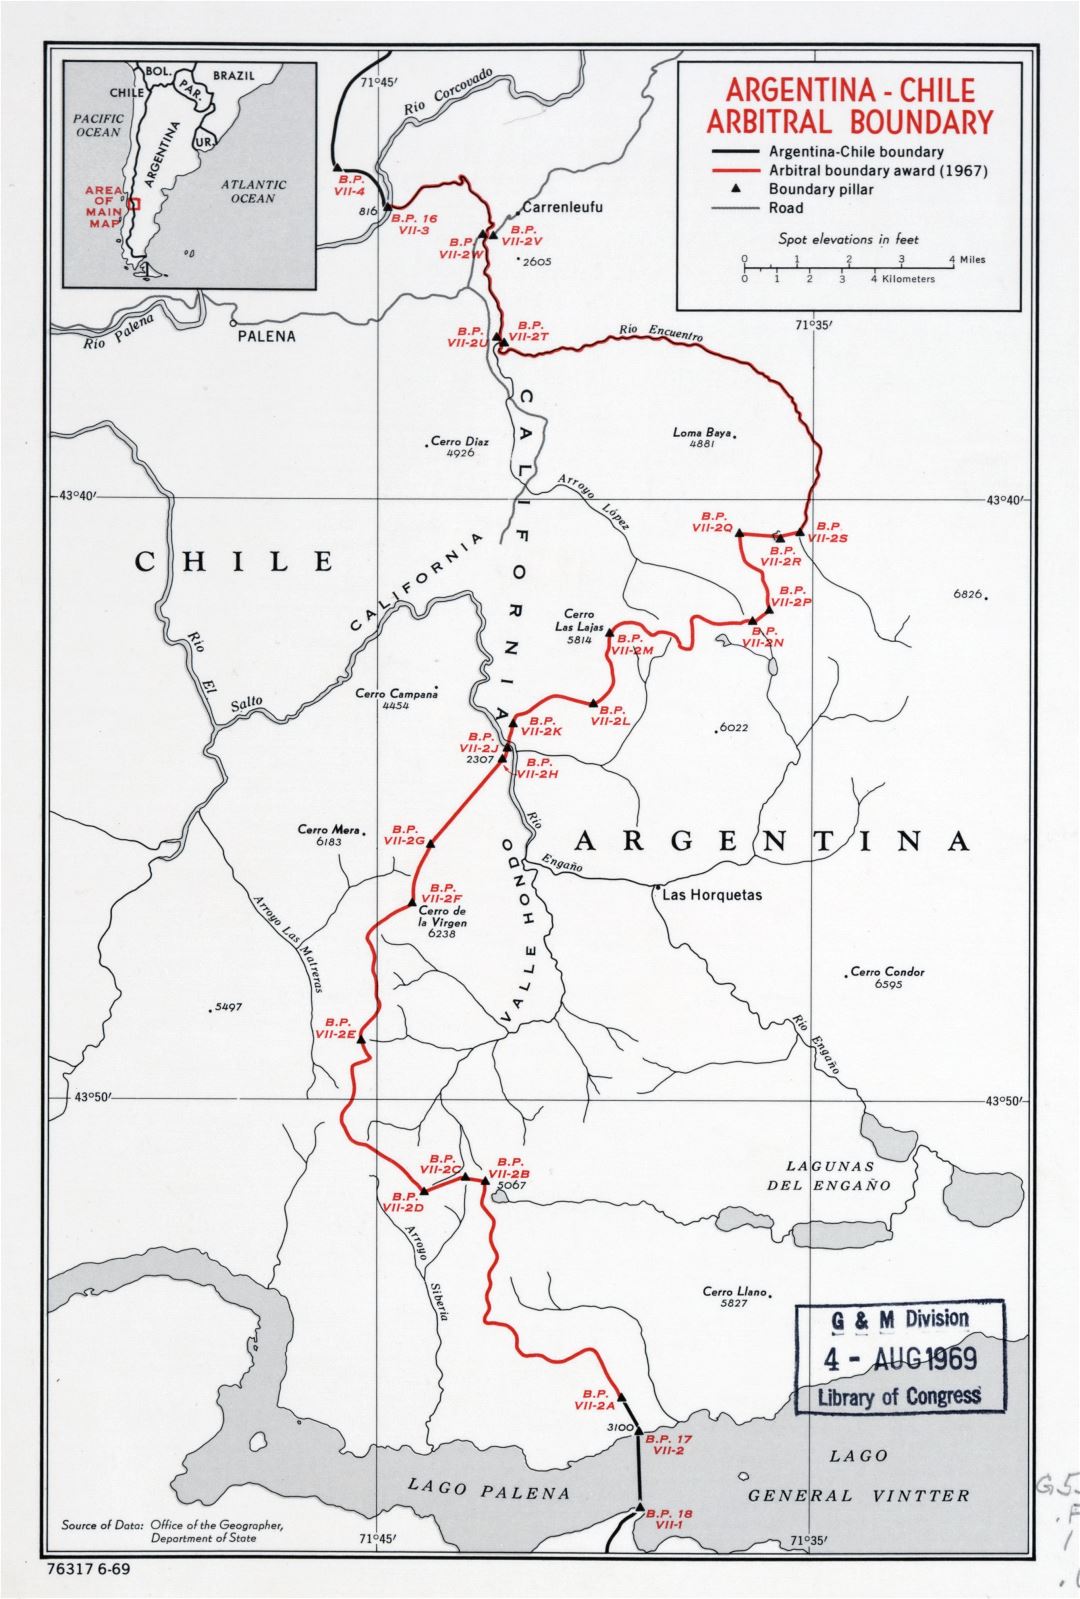 Grande detallado mapa de arbitrales límites Argentina-Chile - 1969